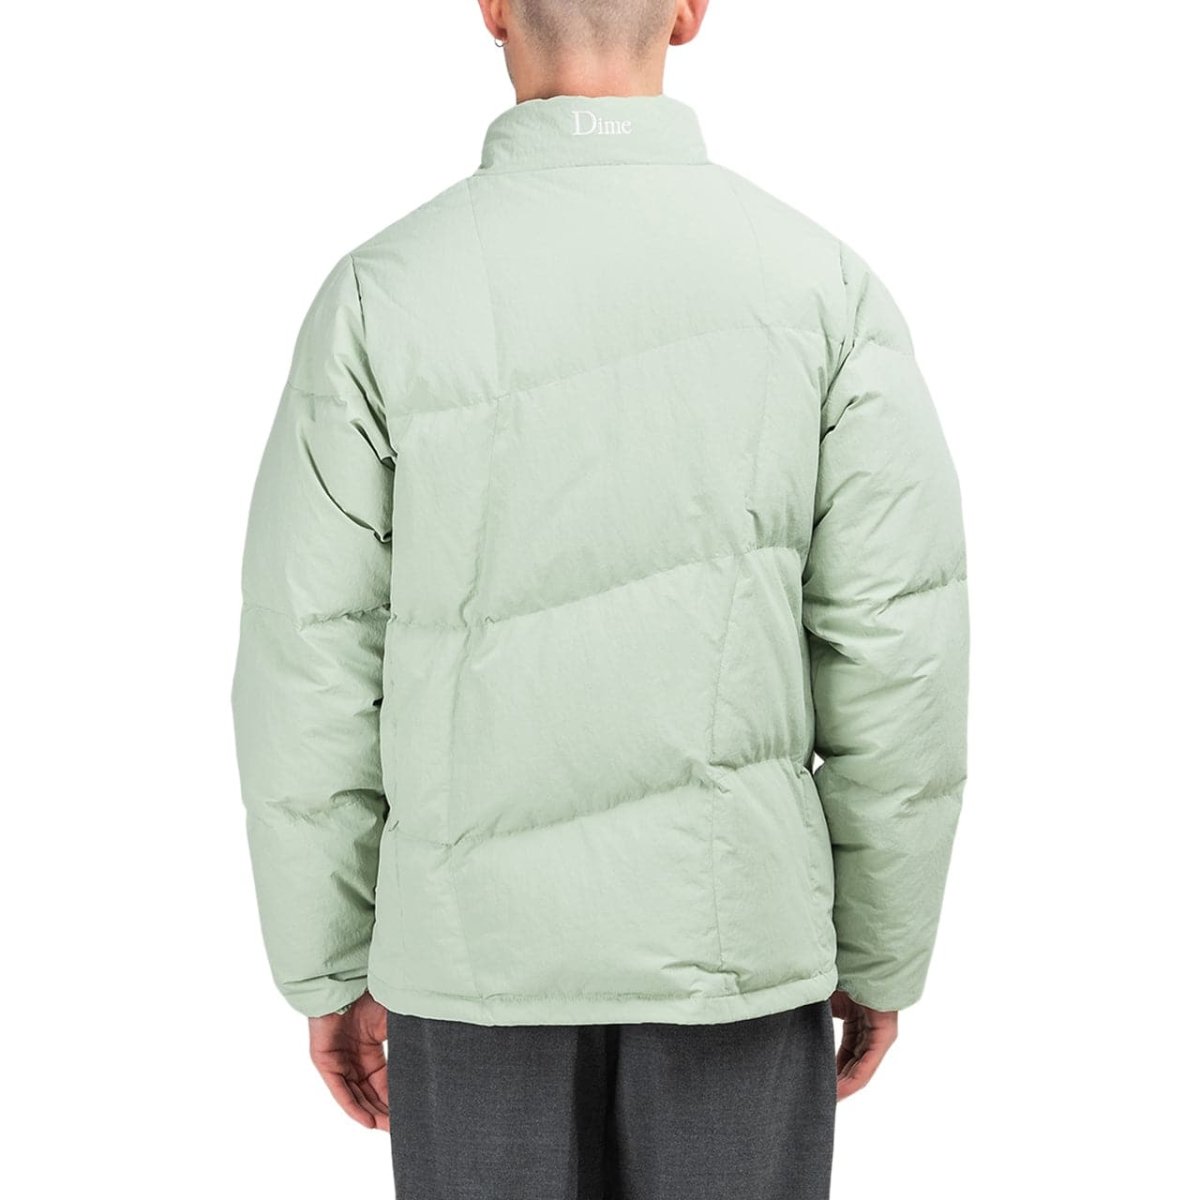 Dime Warp Heavy Weight Puffer Jacket (Mint)  - Allike Store